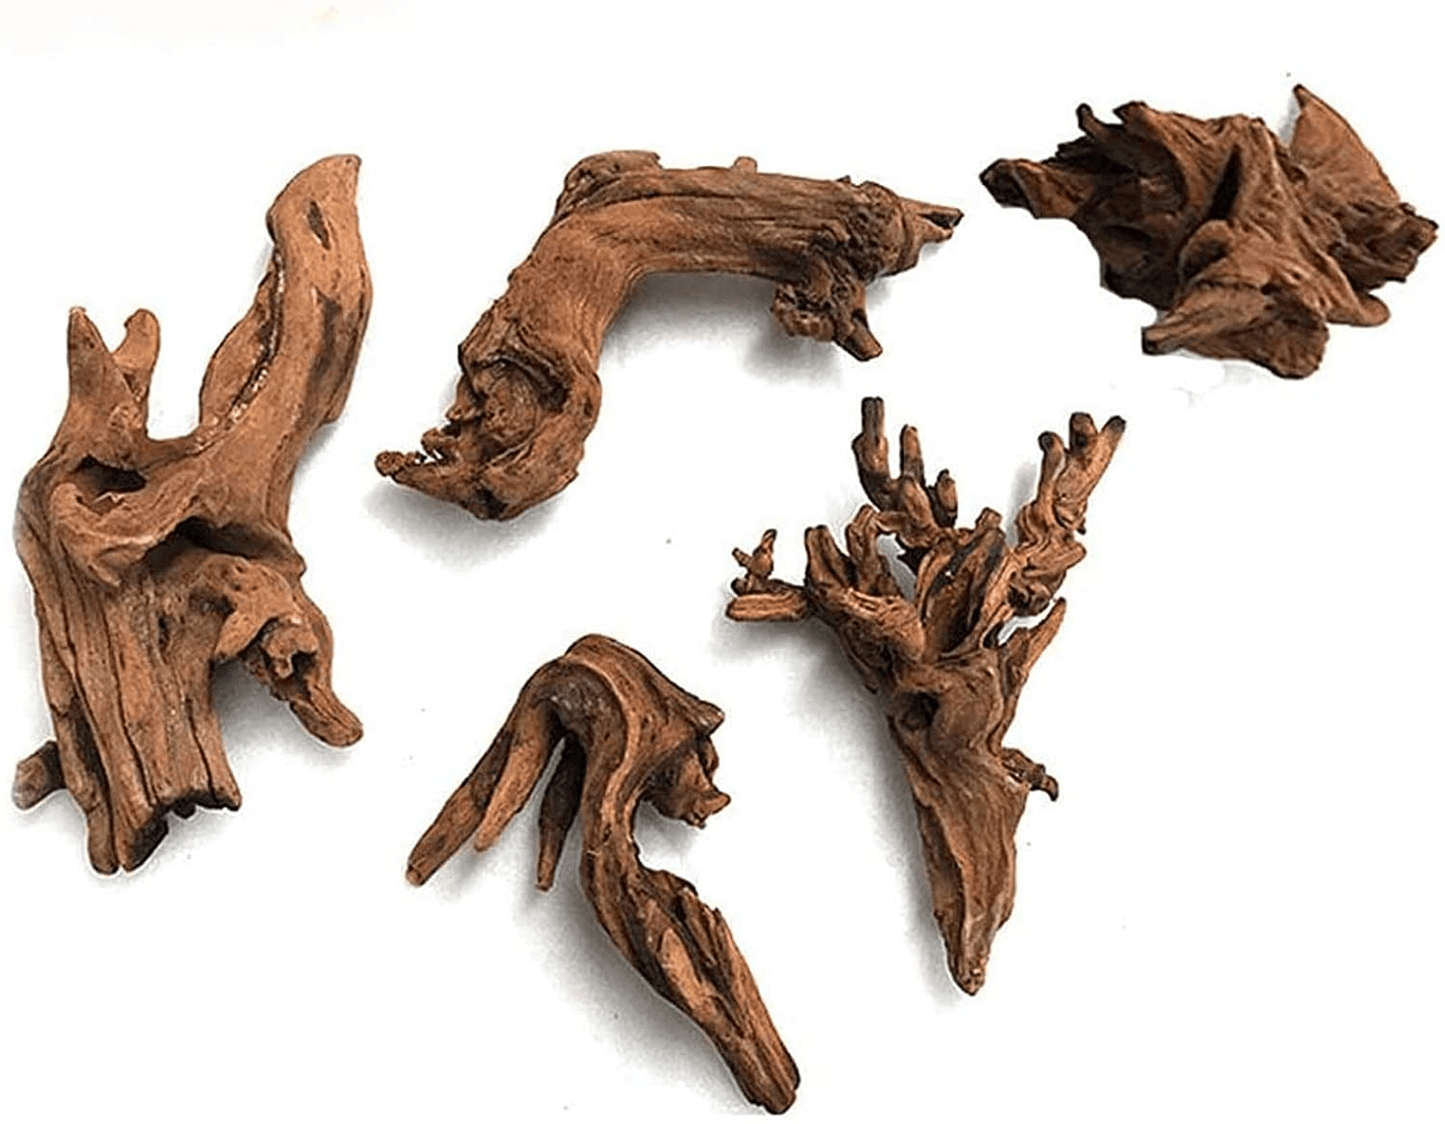 Products – Sierra Aquatic Driftwood